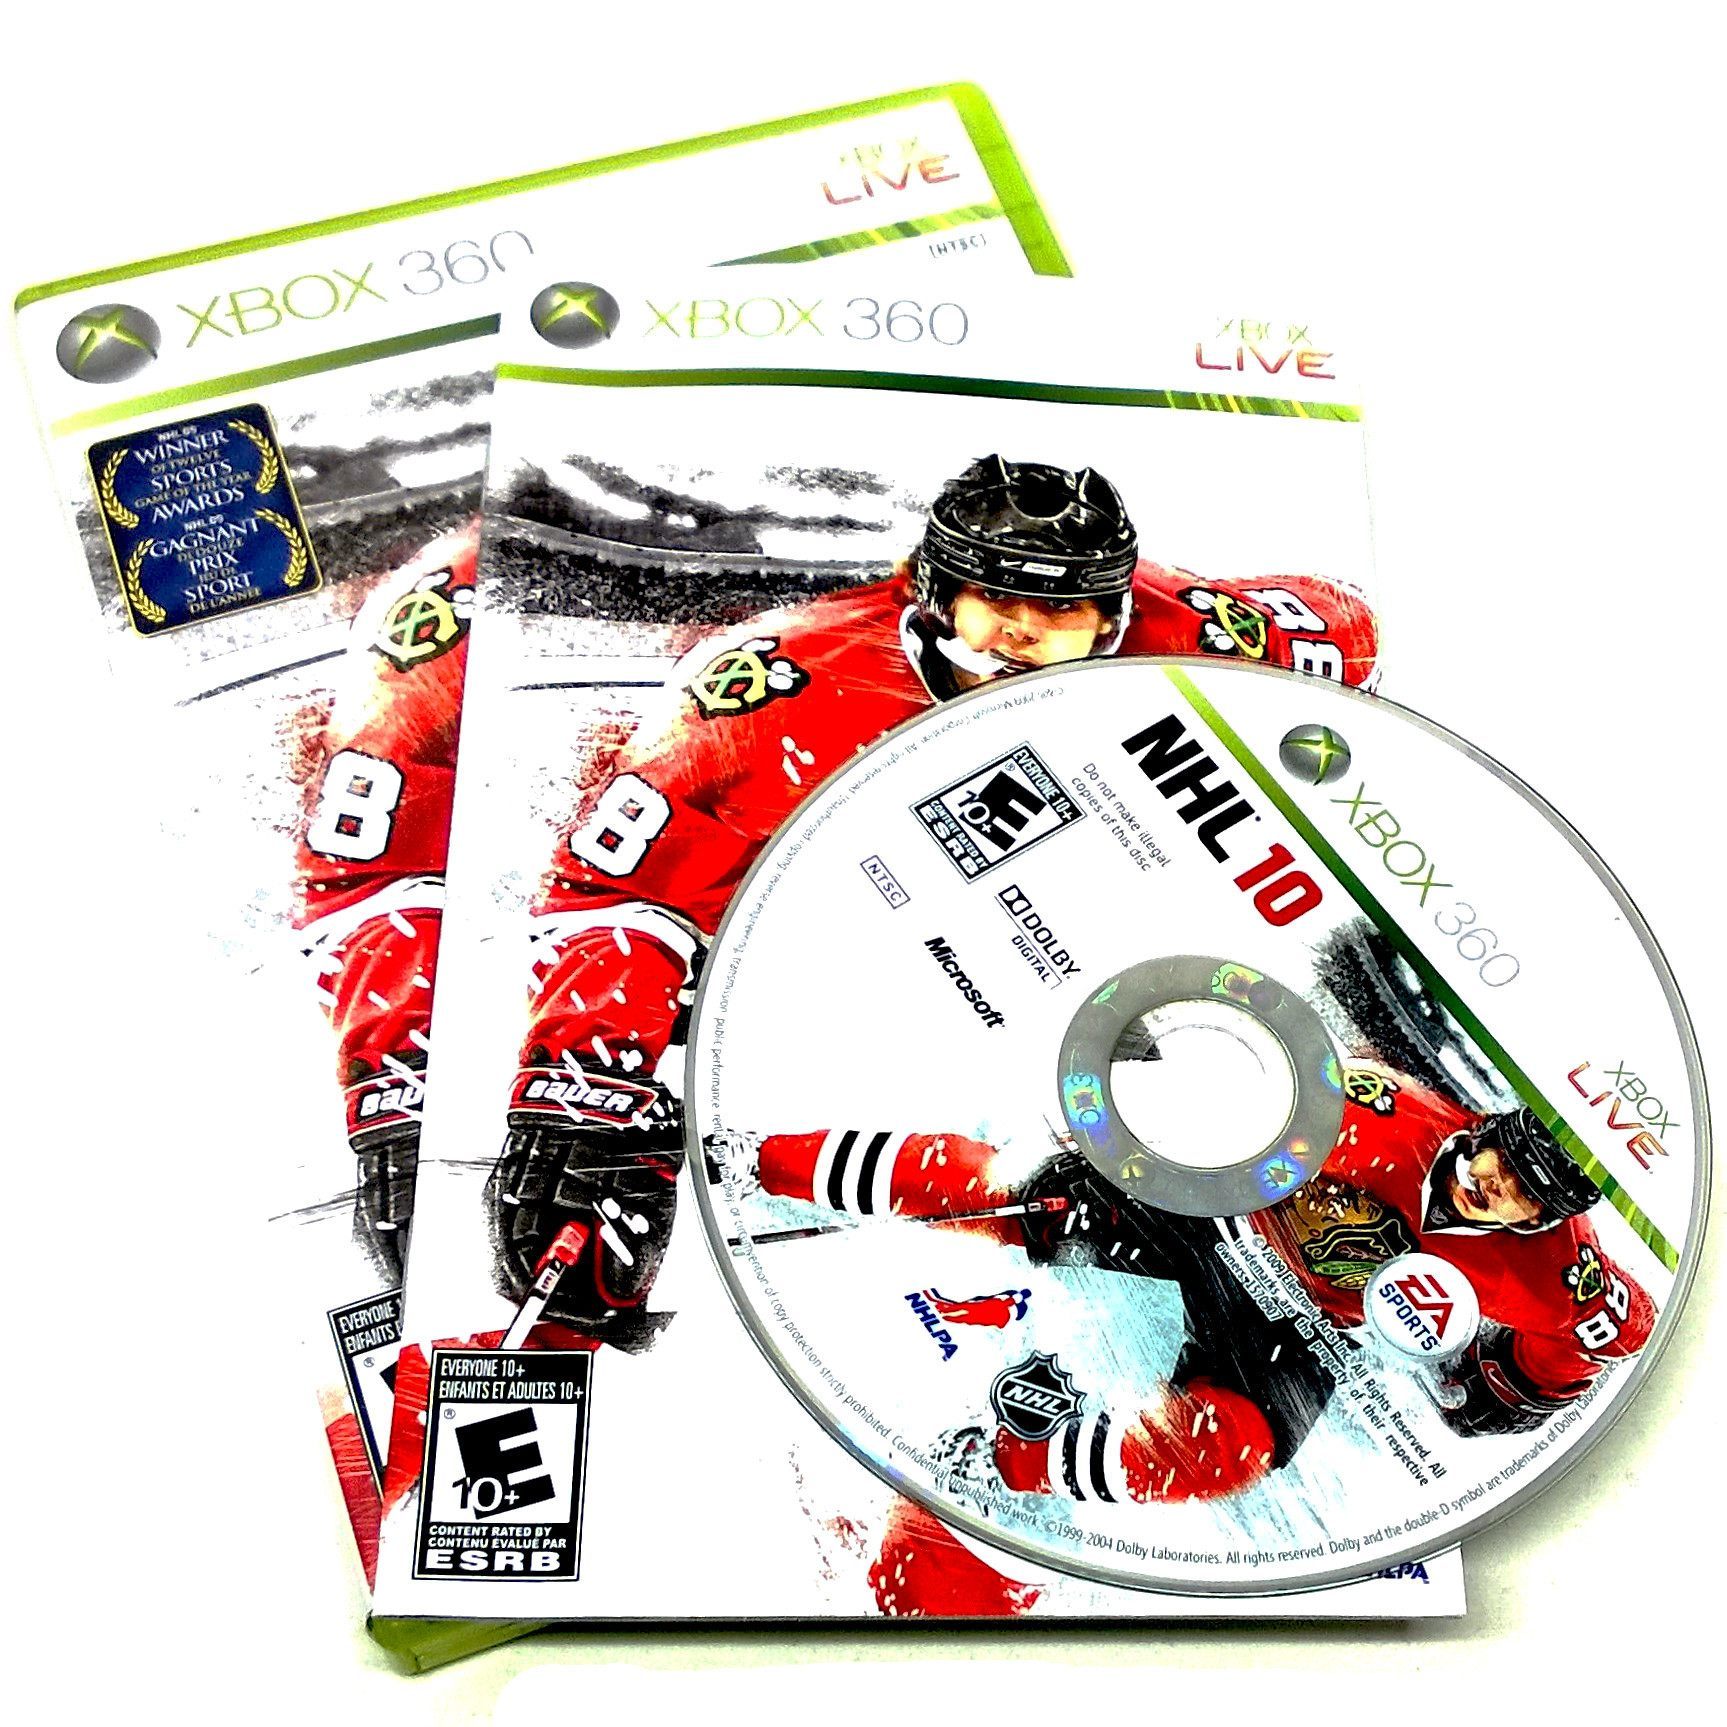 Game - NHL 10